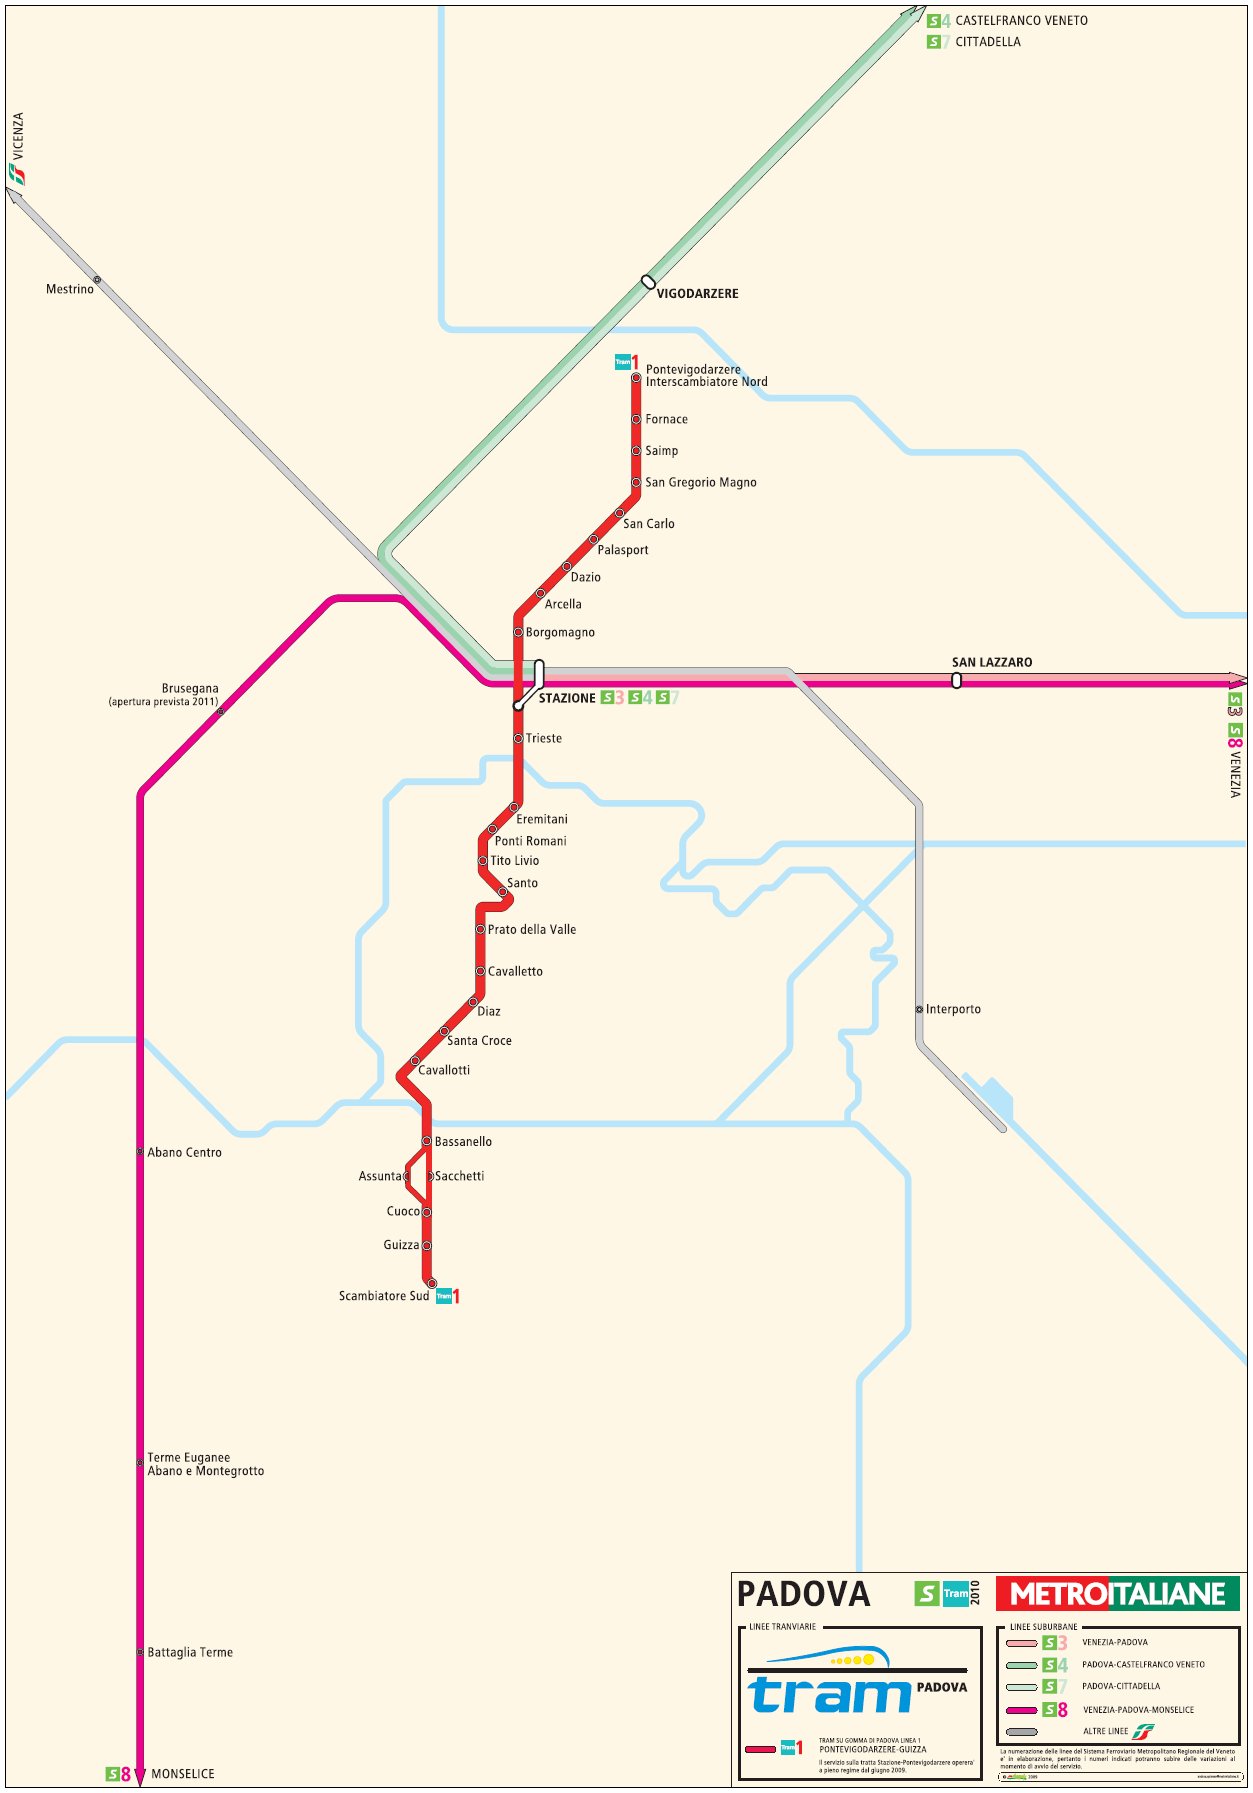 Подробная схема метро Палдуи